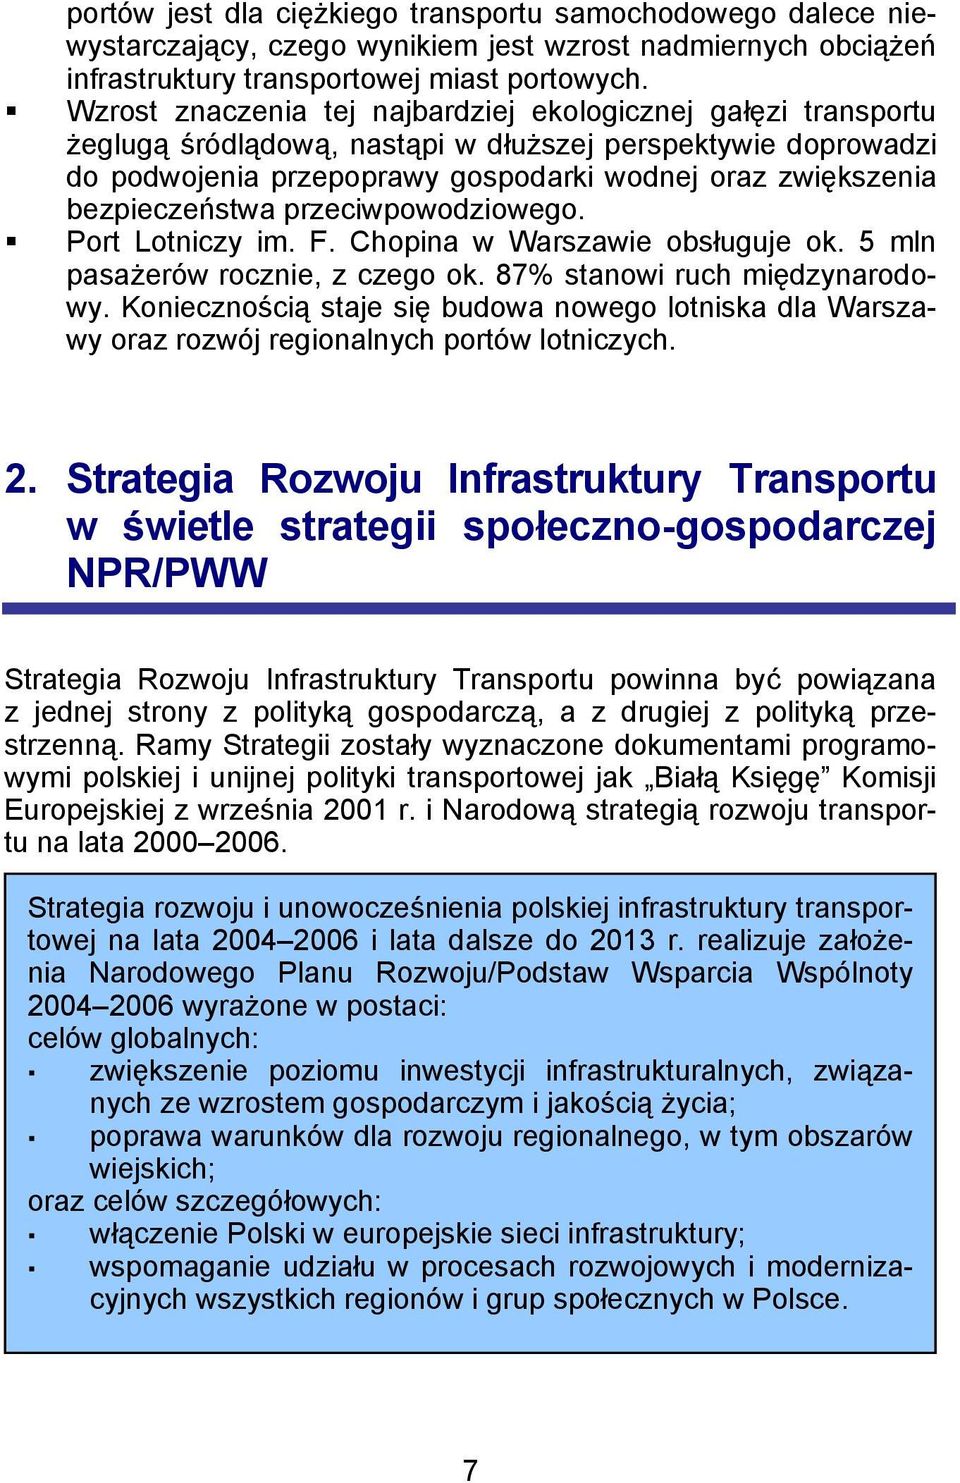 bezpieczeństwa przeciwpowodziowego.! Port Lotniczy im. F. Chopina w Warszawie obsługuje ok. 5 mln pasażerów rocznie, z czego ok. 87% stanowi ruch międzynarodowy.